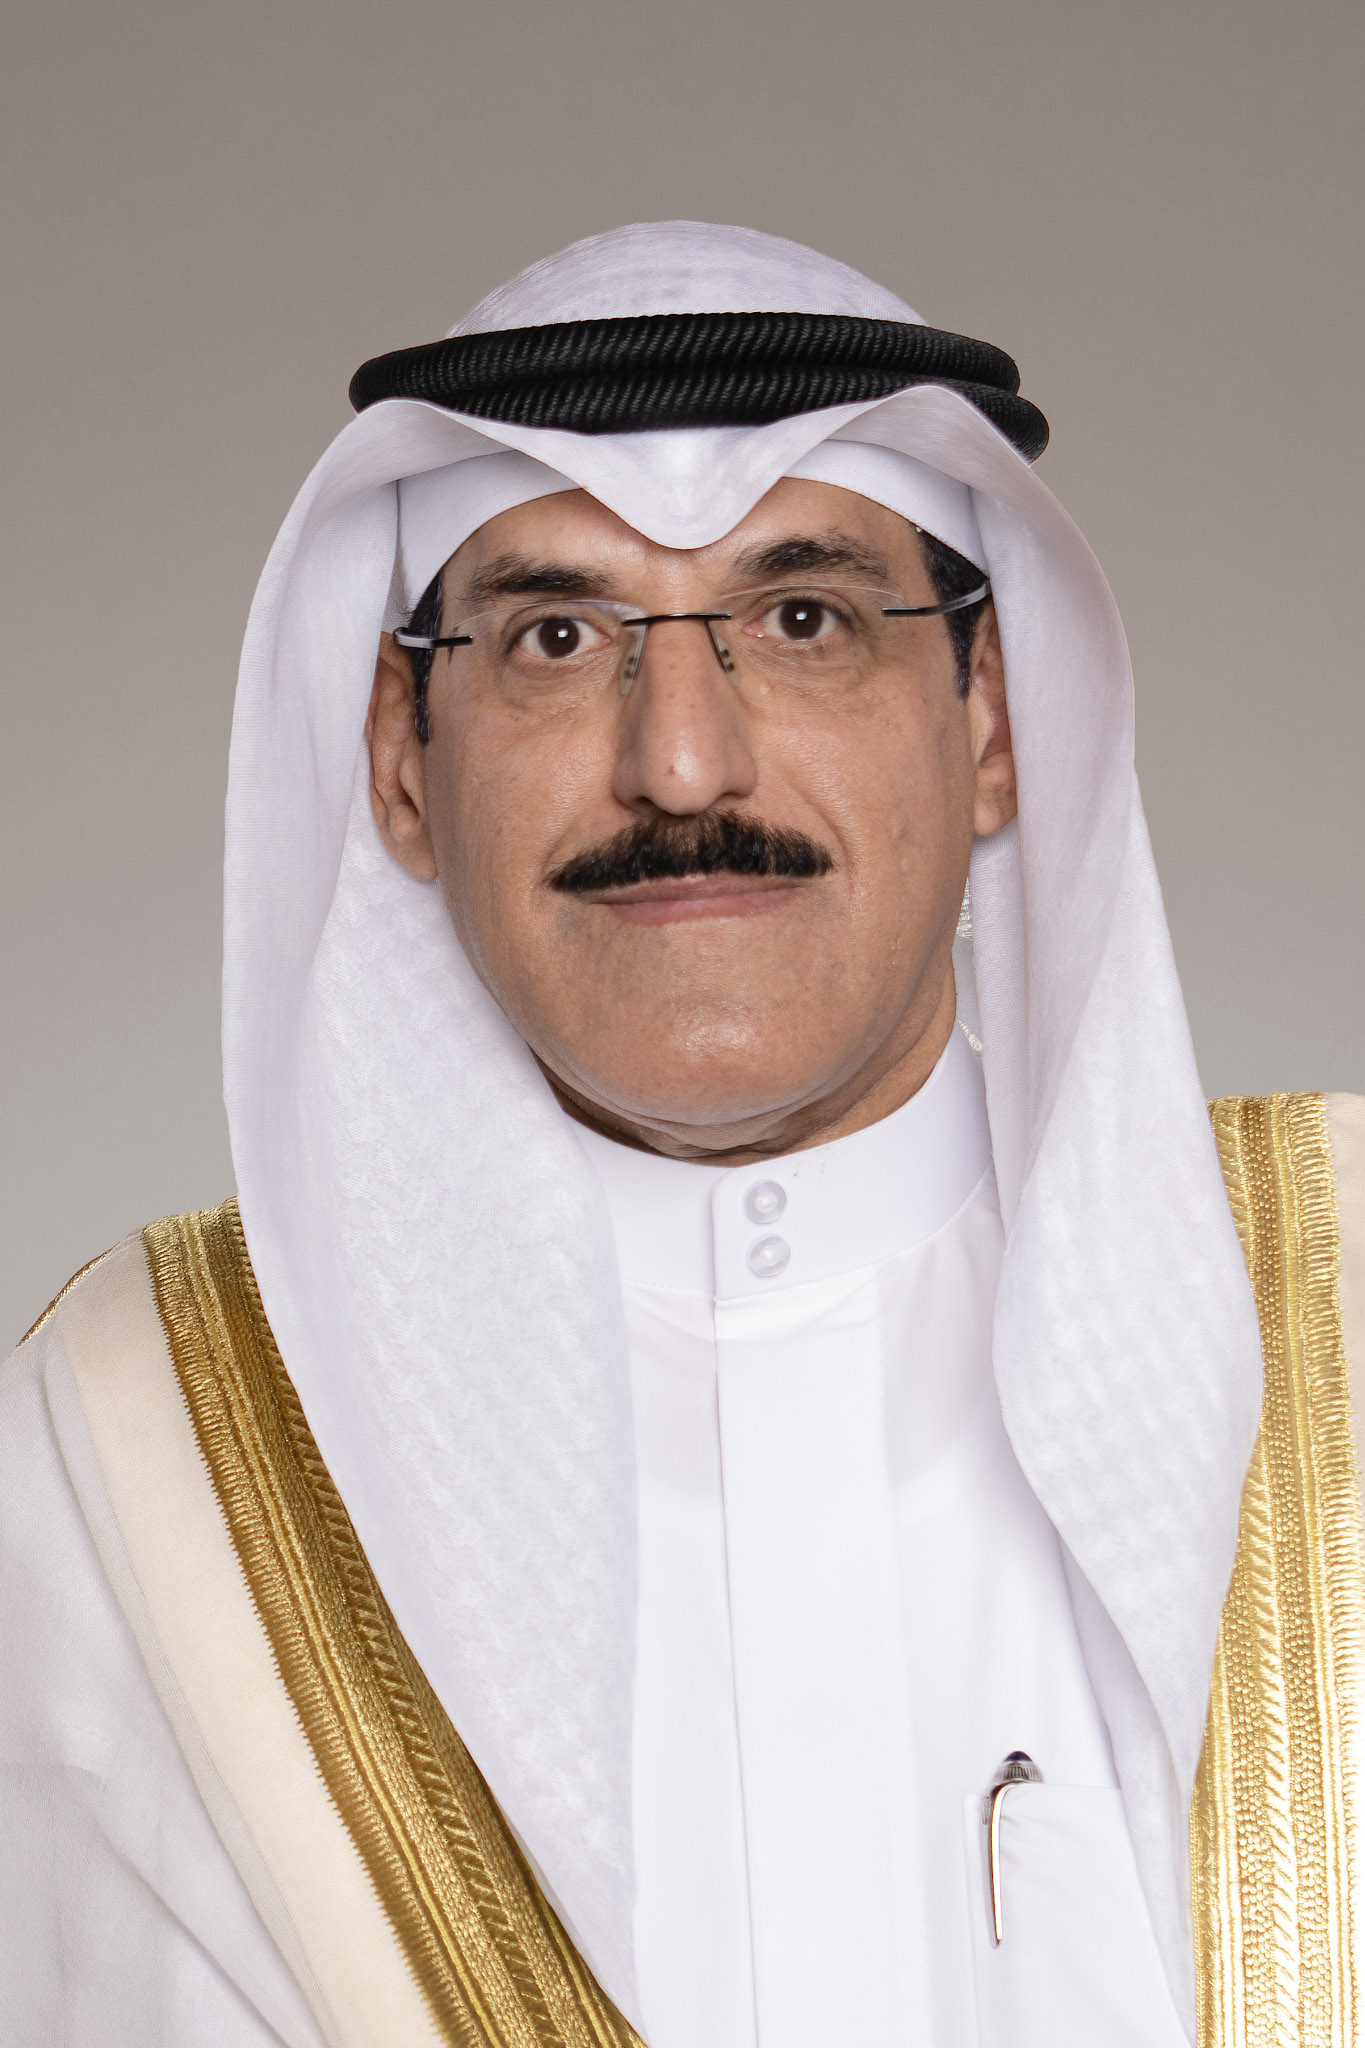 وزير الكهرباء والماء والطاقة المتجددة الدكتور جاسم الاستاد